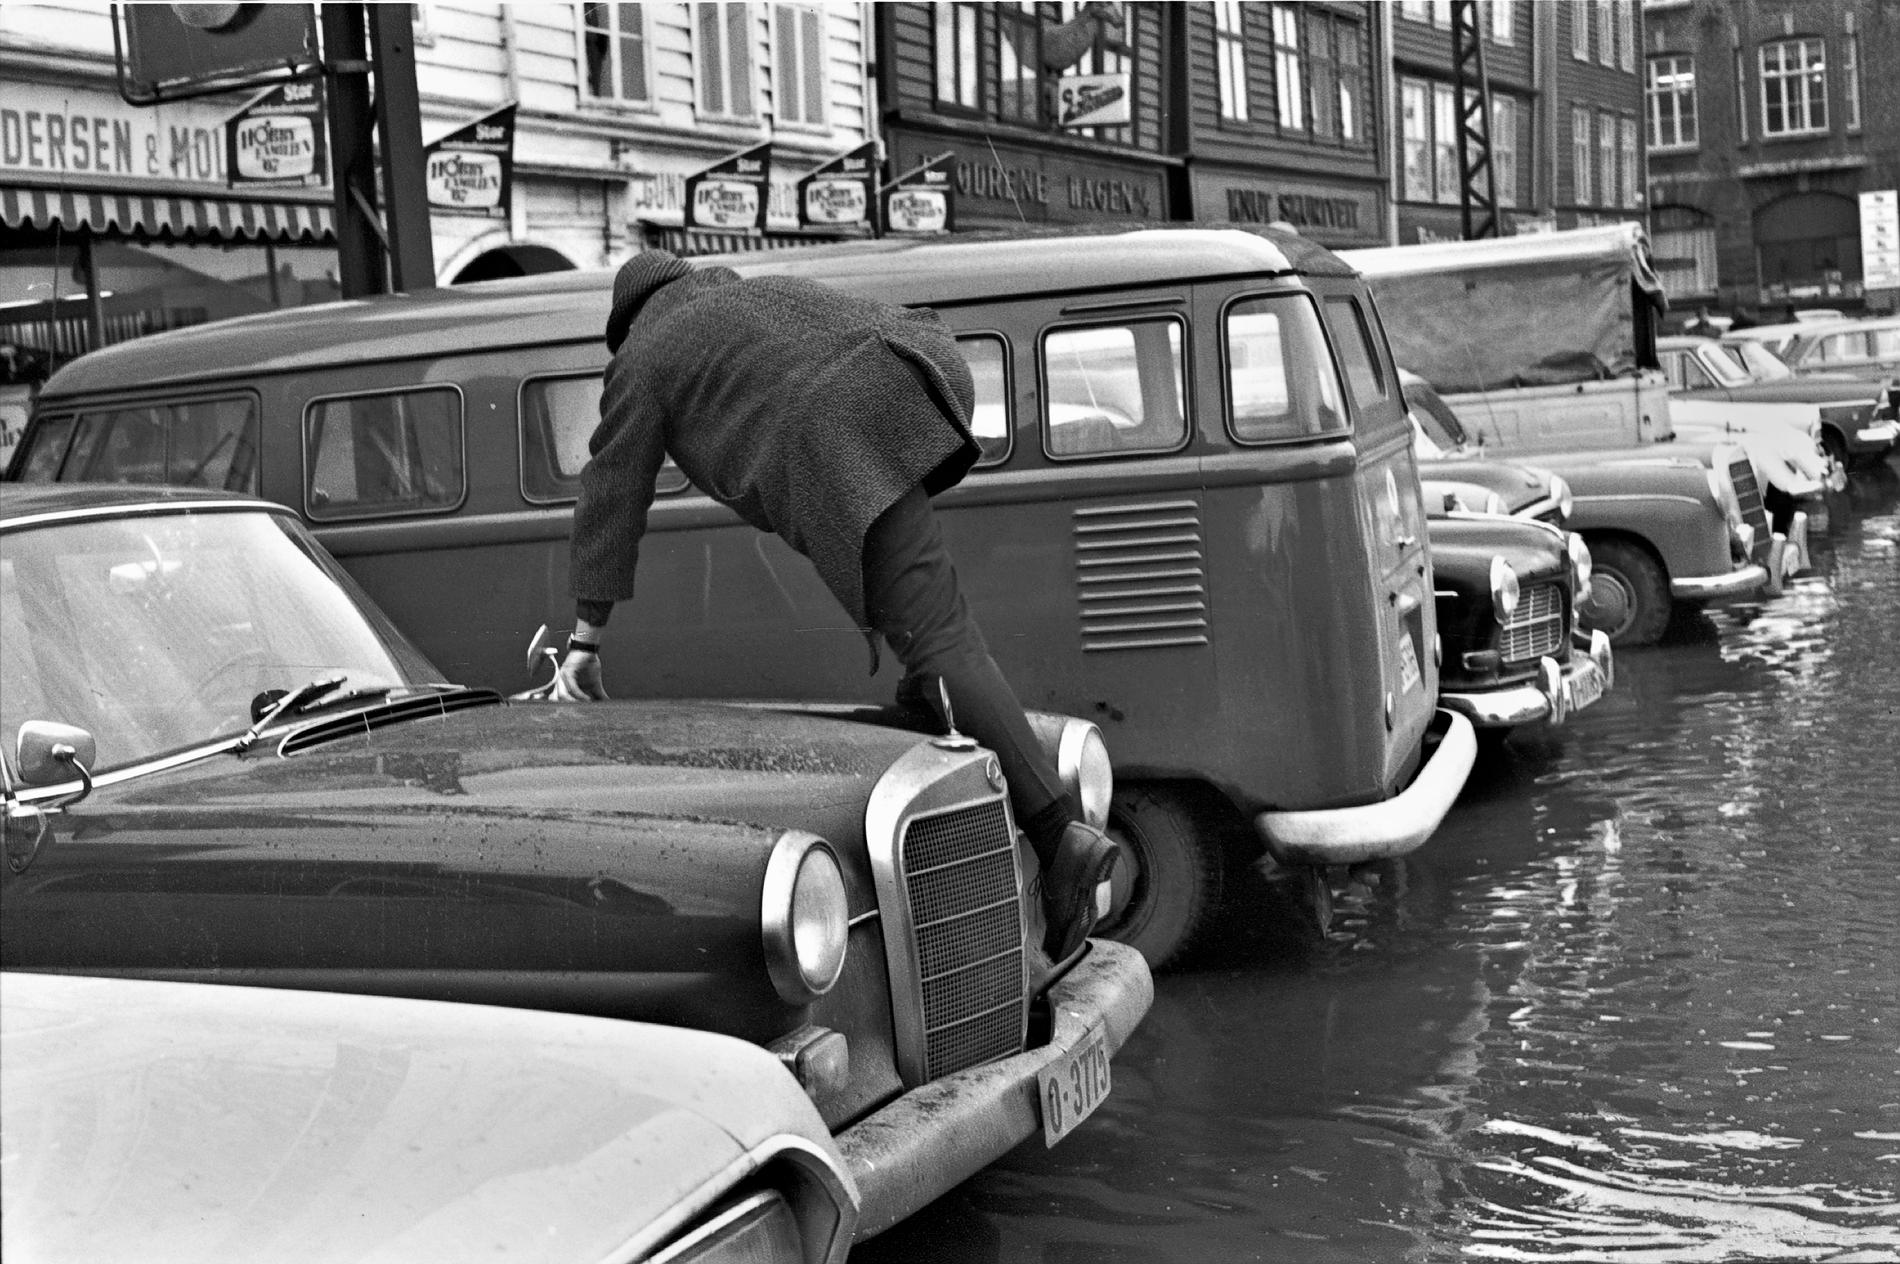 I mars 1967 kom en av de verste springfloene i Bryggens historie. Butikkene sto under vann, de historiske bygningene også.